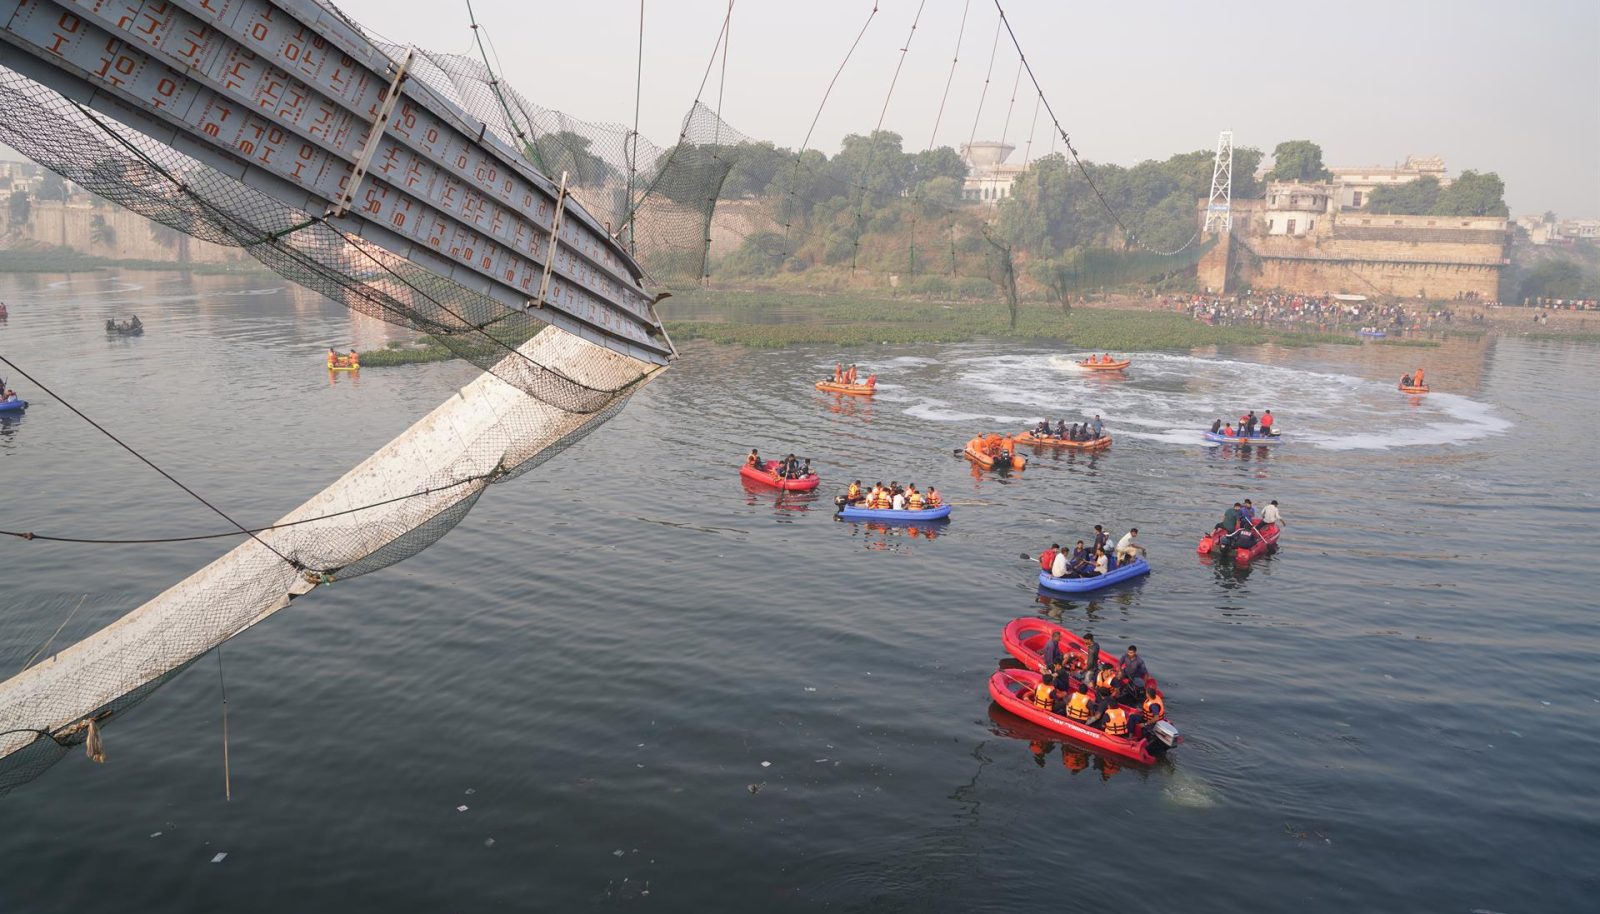 colapso de un puente que dejó 134 muertos en la India